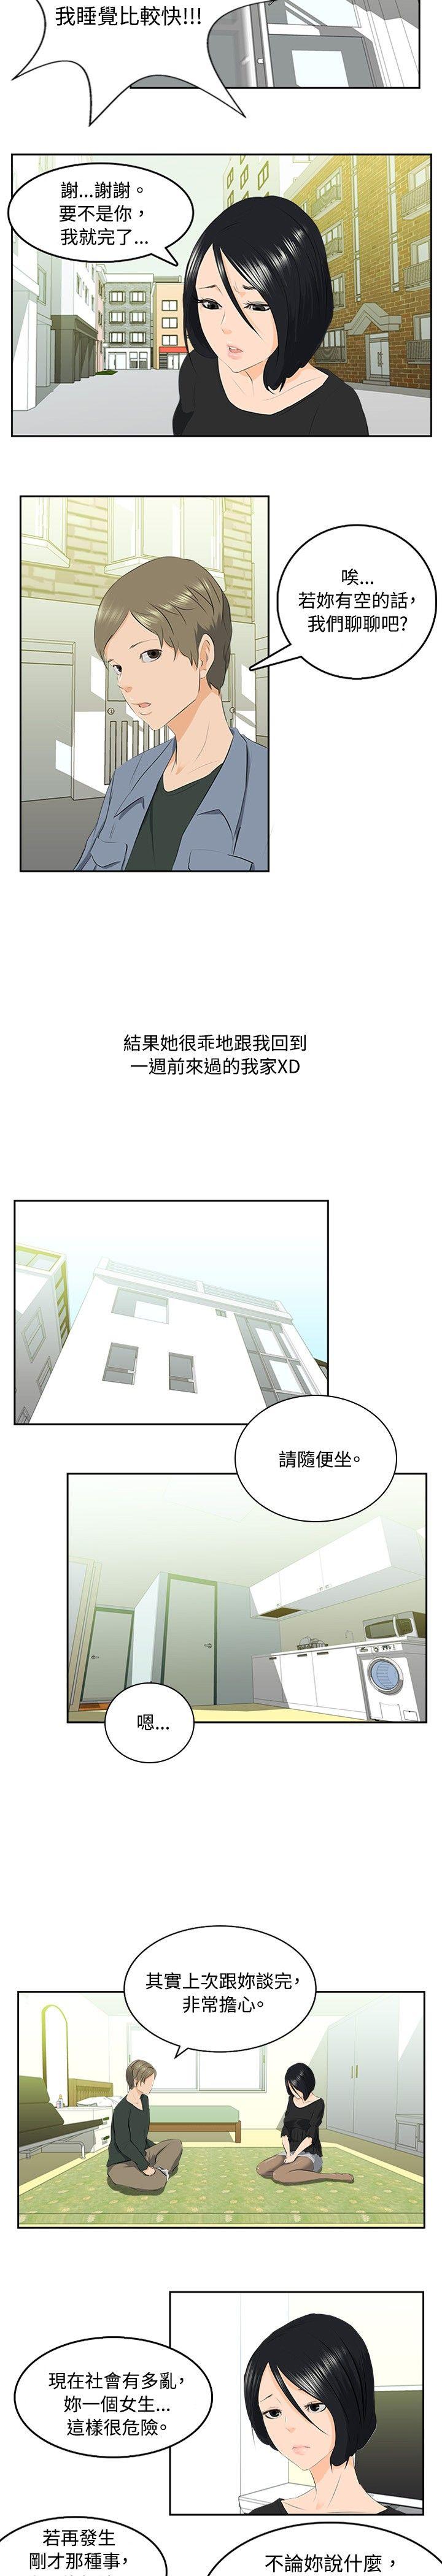 秘密Story  邪教之女(中) 漫画图片5.jpg